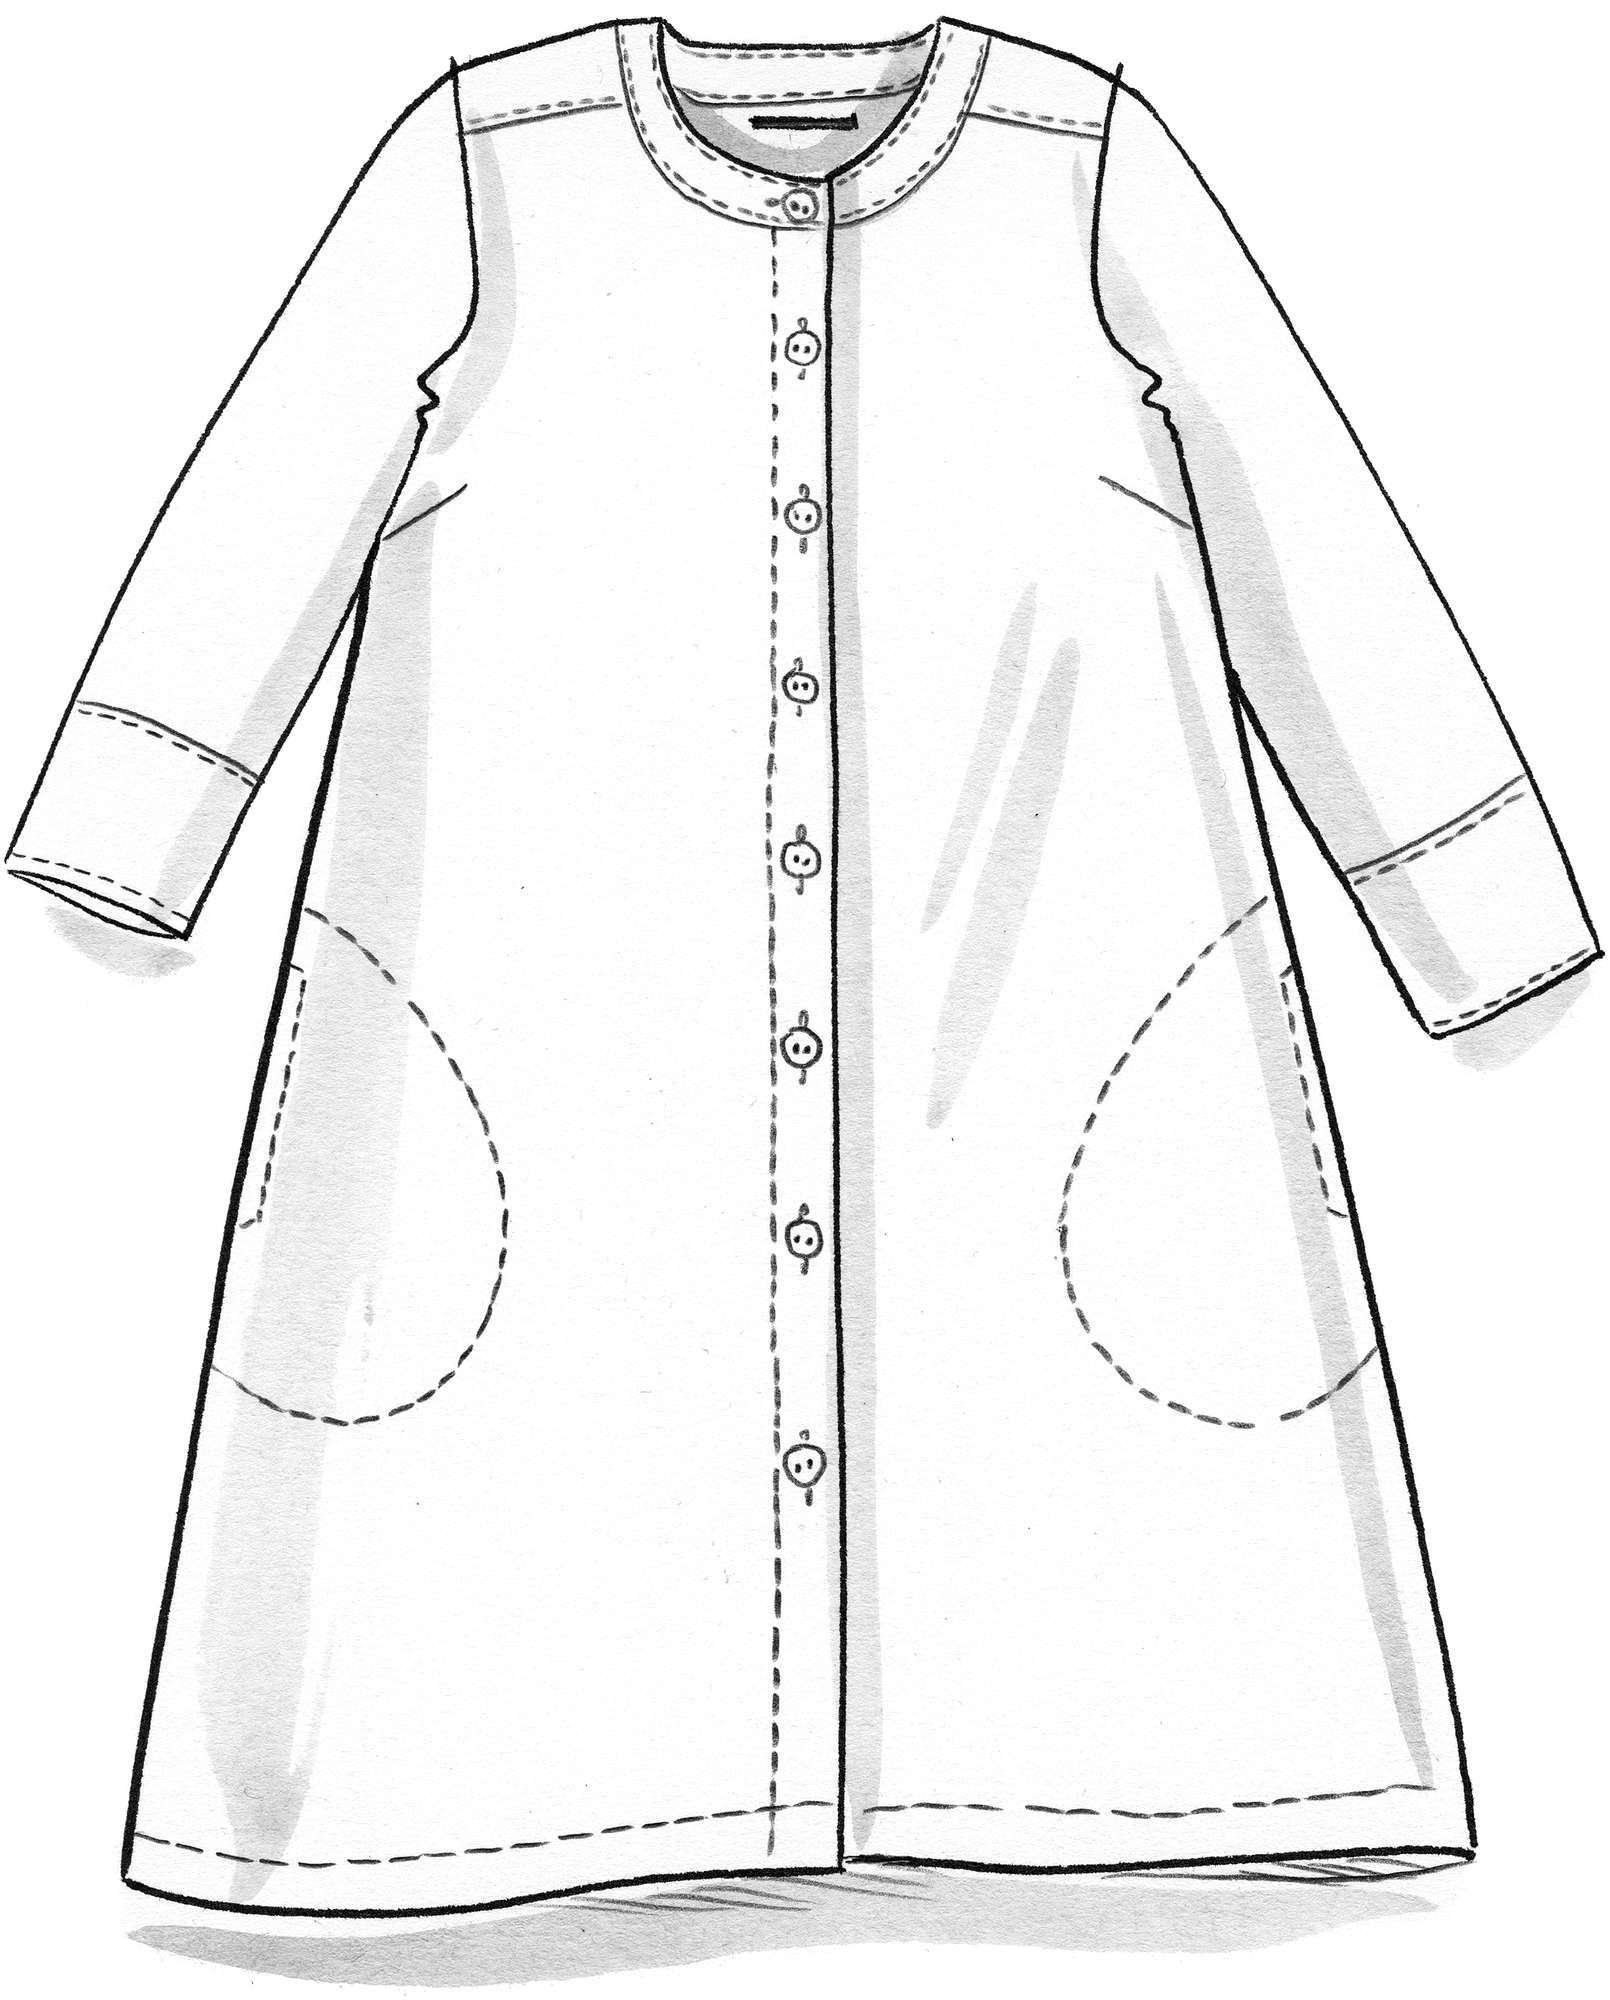 “Mirabelle” woven linen dress